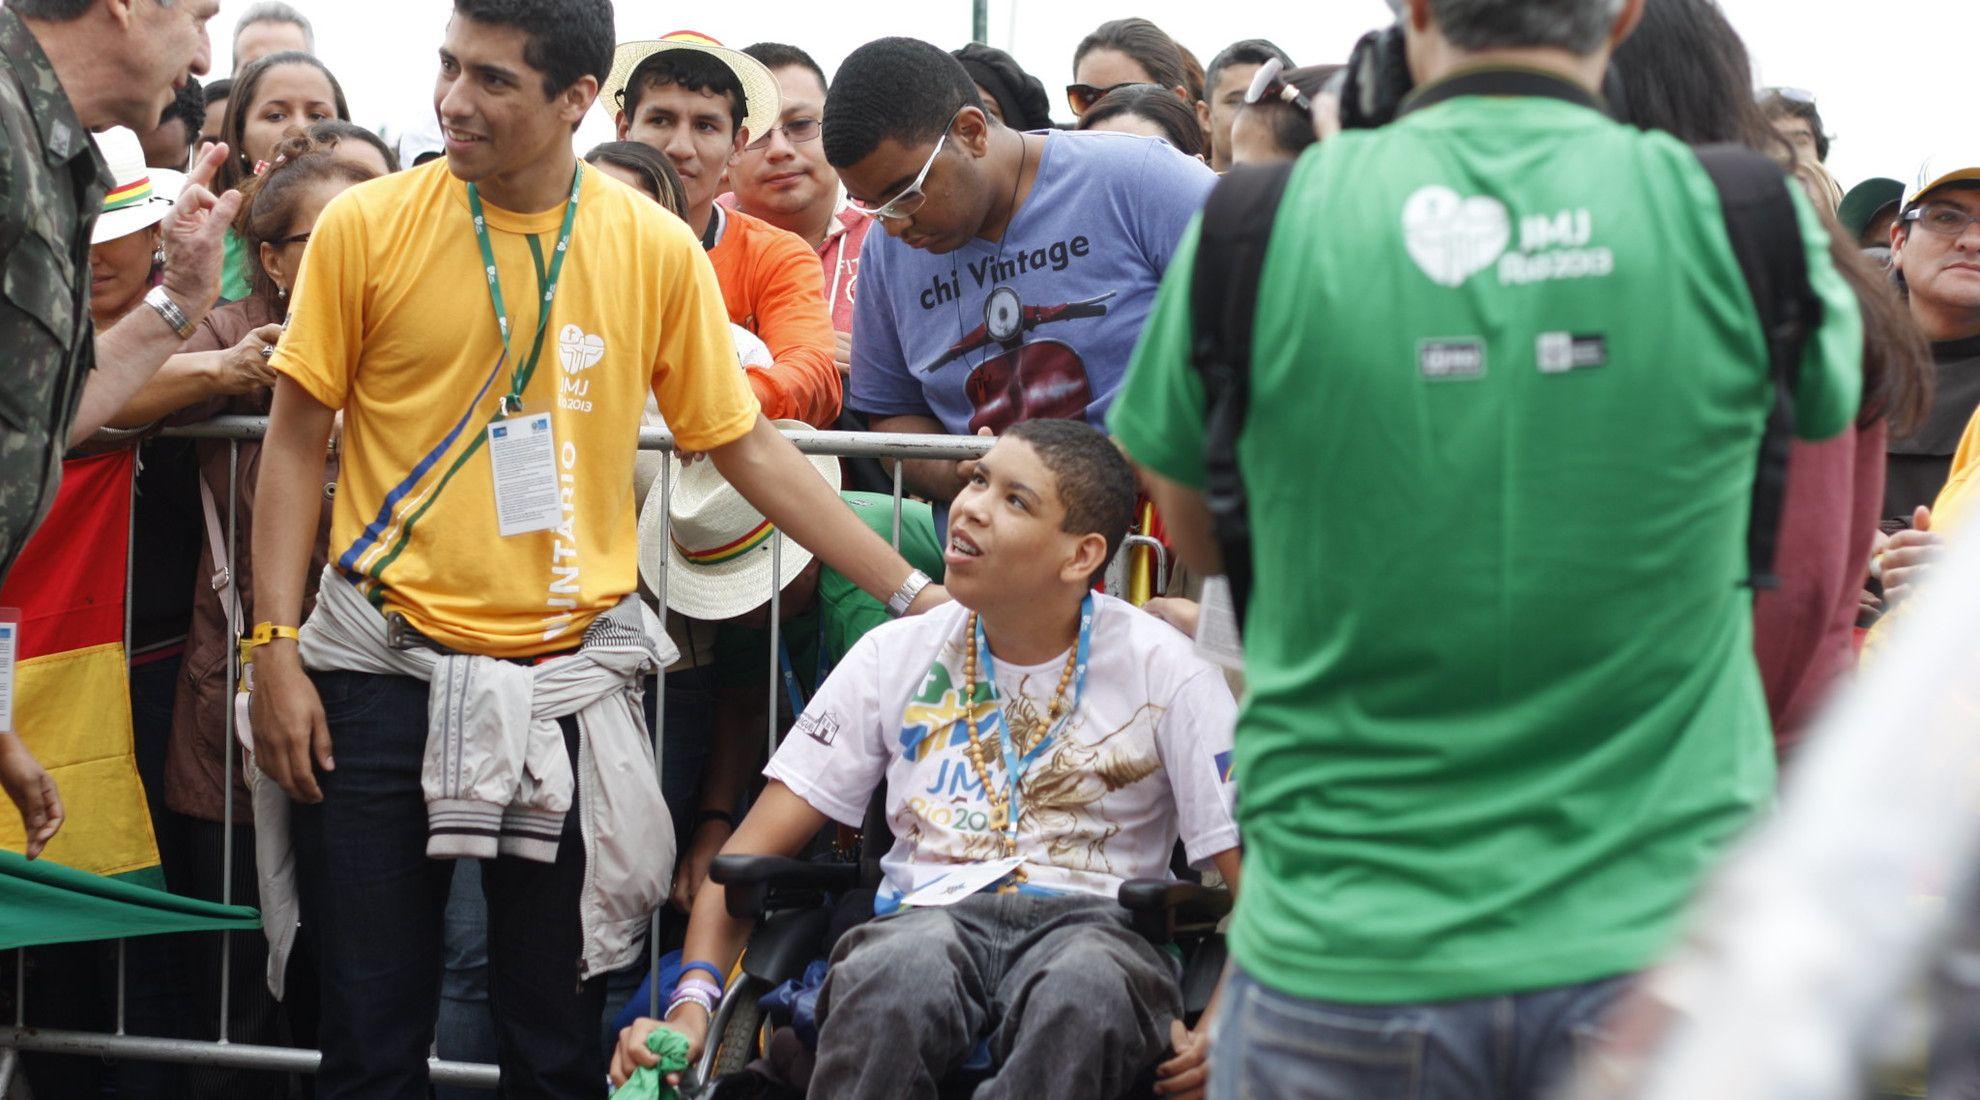 Voluntarios JMJ Rio 2013